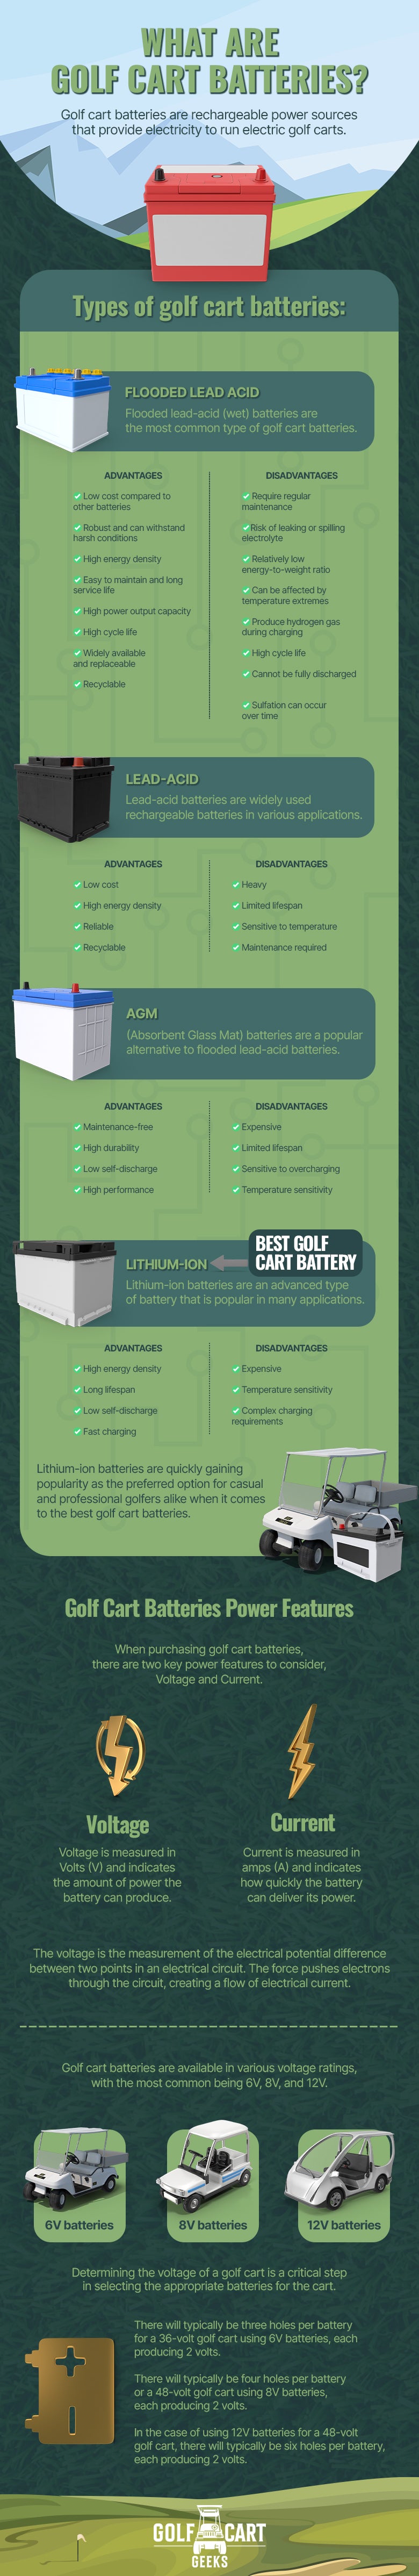 golf cart batteries infographic